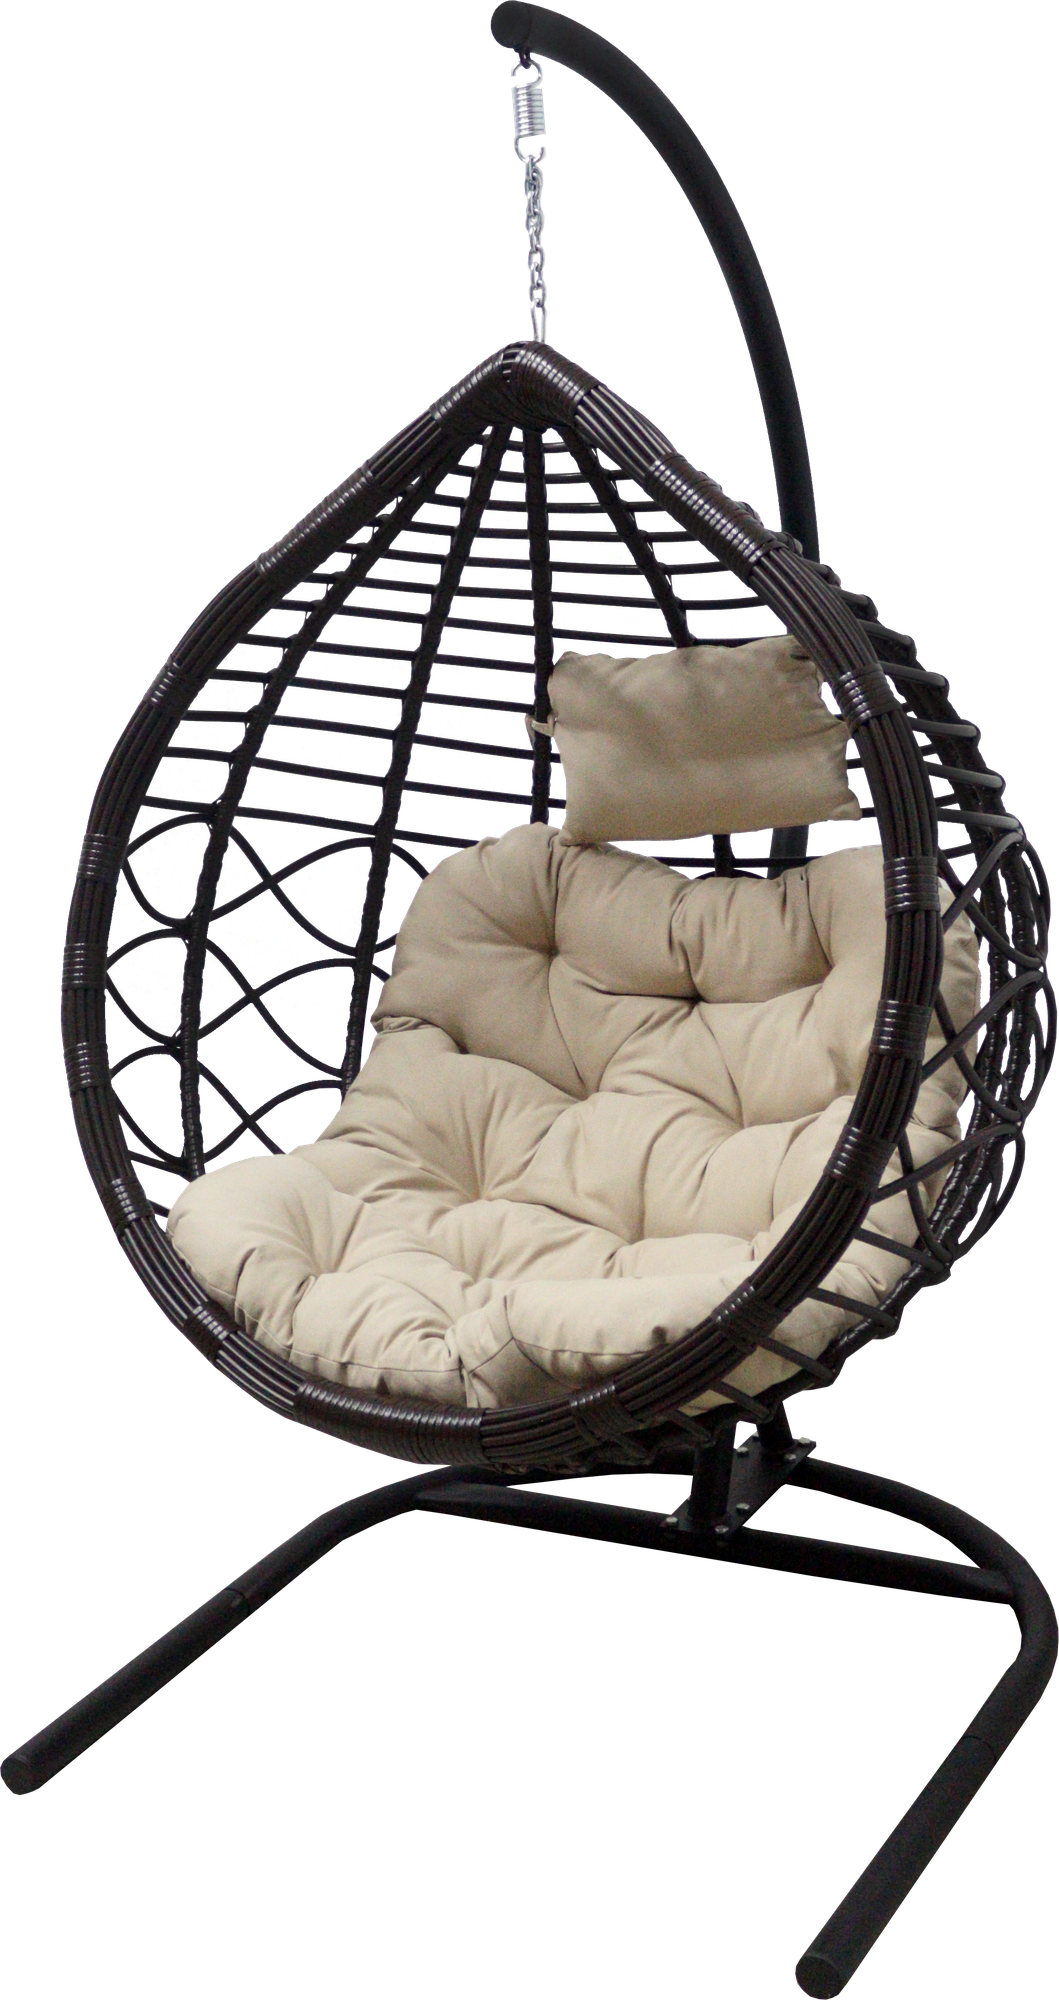 Кресло подвесное с опорой Veil 2 102x200x126 см, искусственный ротанг, тёмно-коричневый/бежевый - фотография № 1